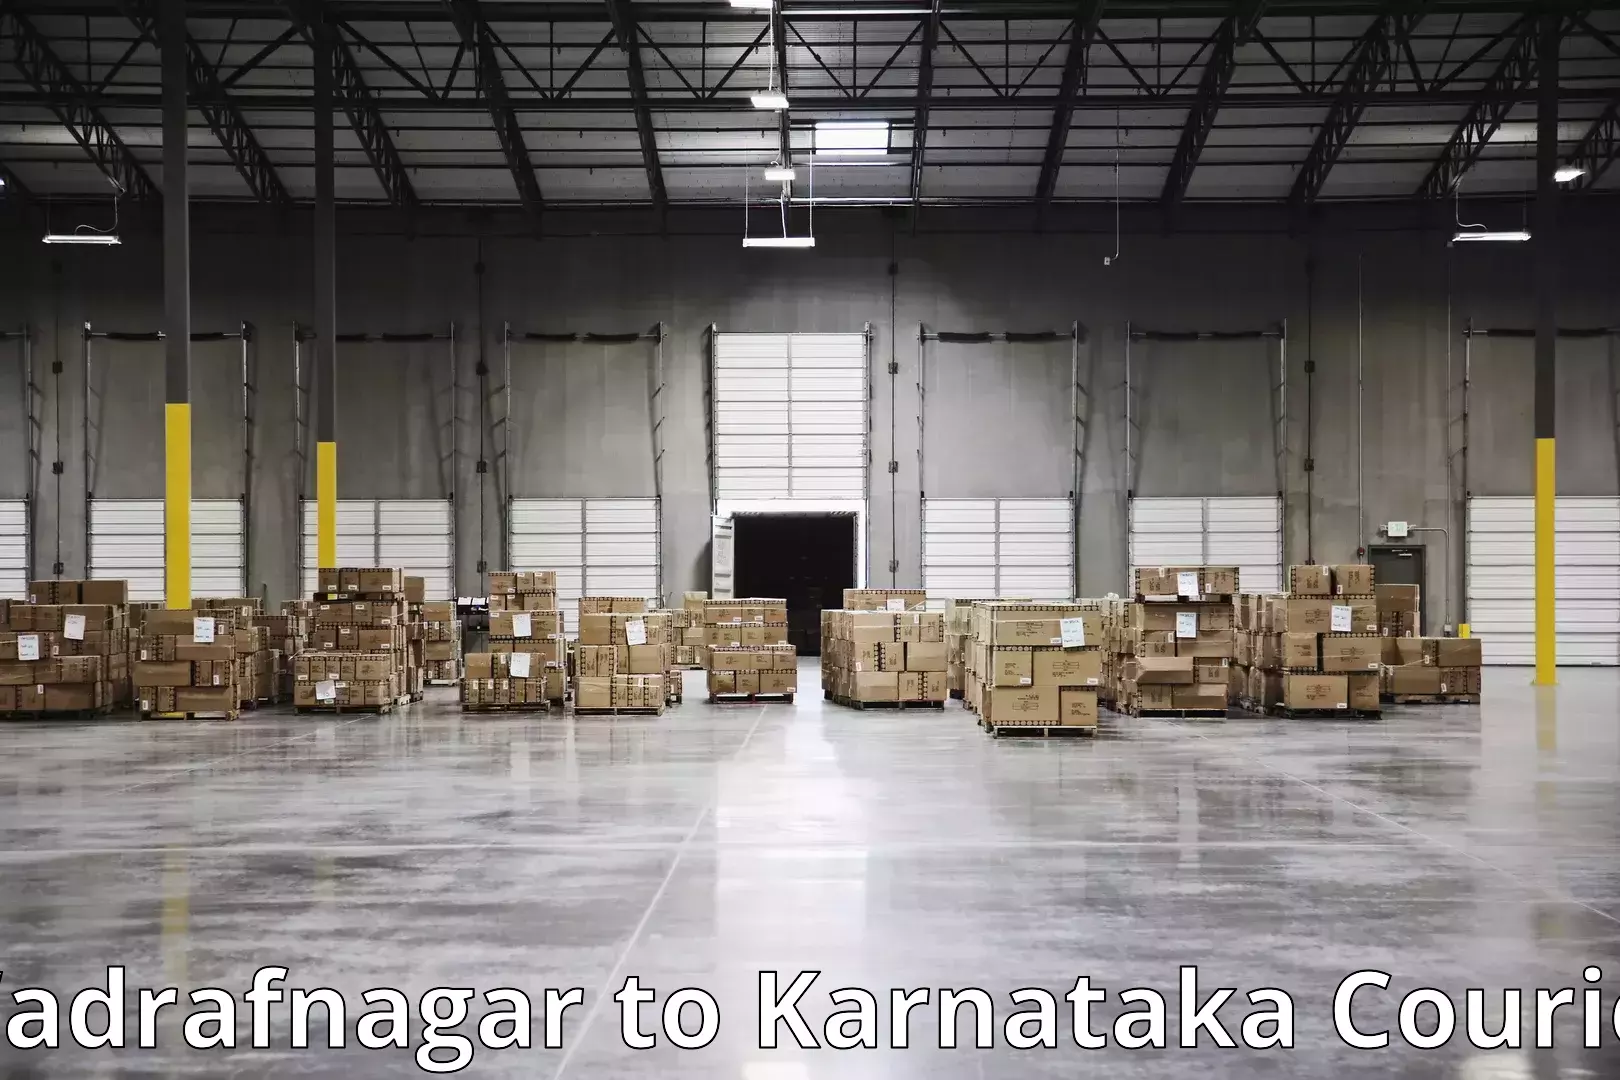 Advanced relocation solutions Wadrafnagar to Karnataka